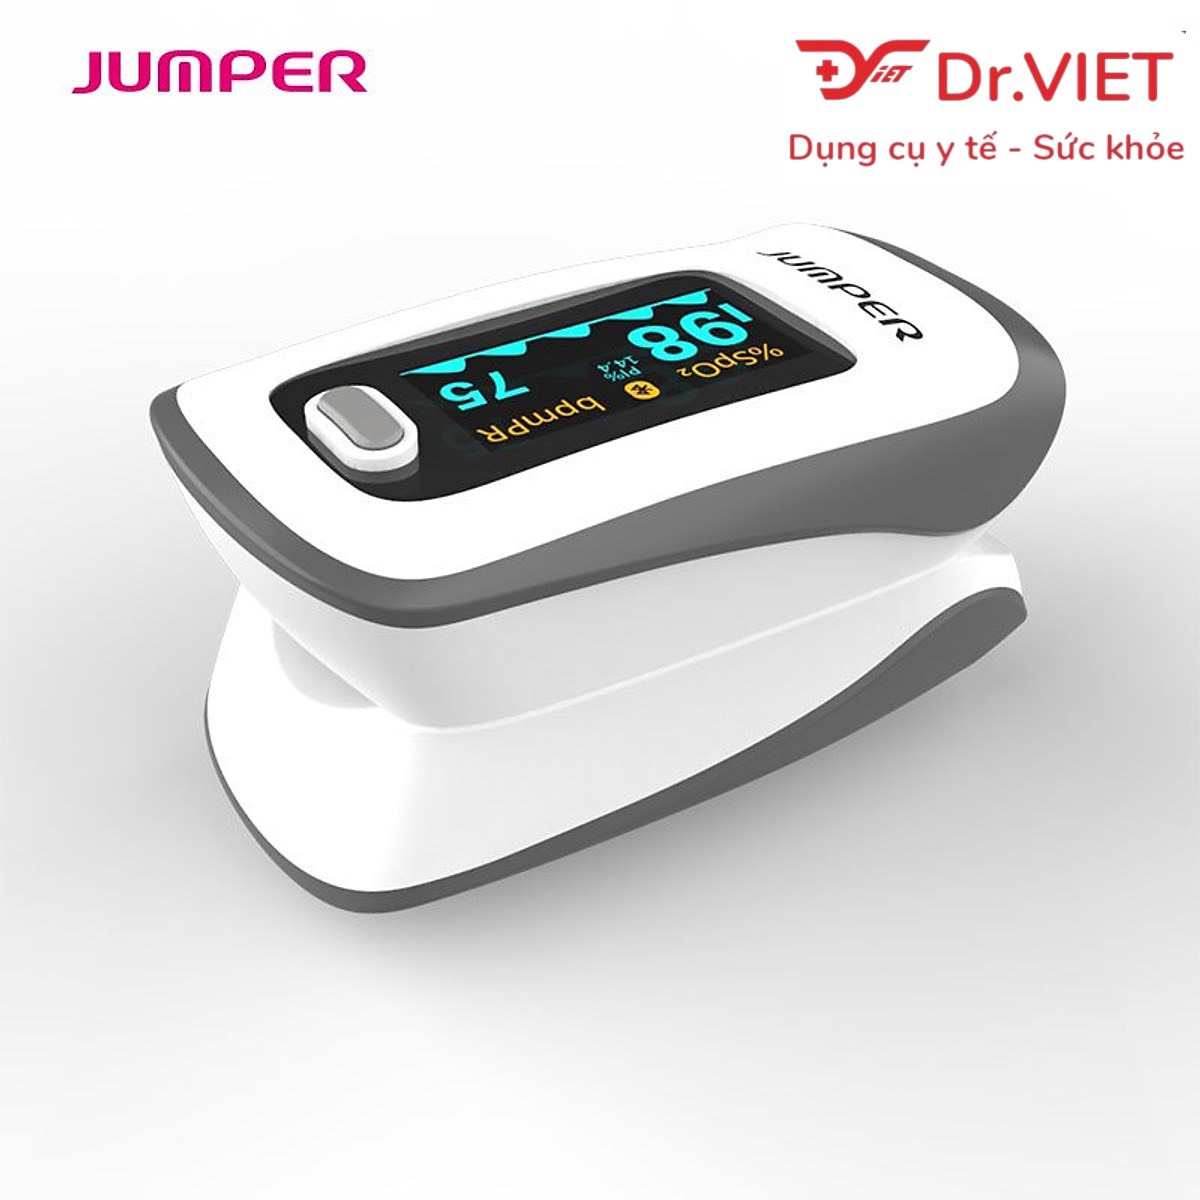 Hình ảnh Máy đo nồng độ oxy máu và nhịp tim Jumper JPD-500F (Bluetooth) Chính hãng - Thiết kế nhỏ gọn, Sử dụng an toàn, Kết nối cùng Smartphone, Màn hình OLED